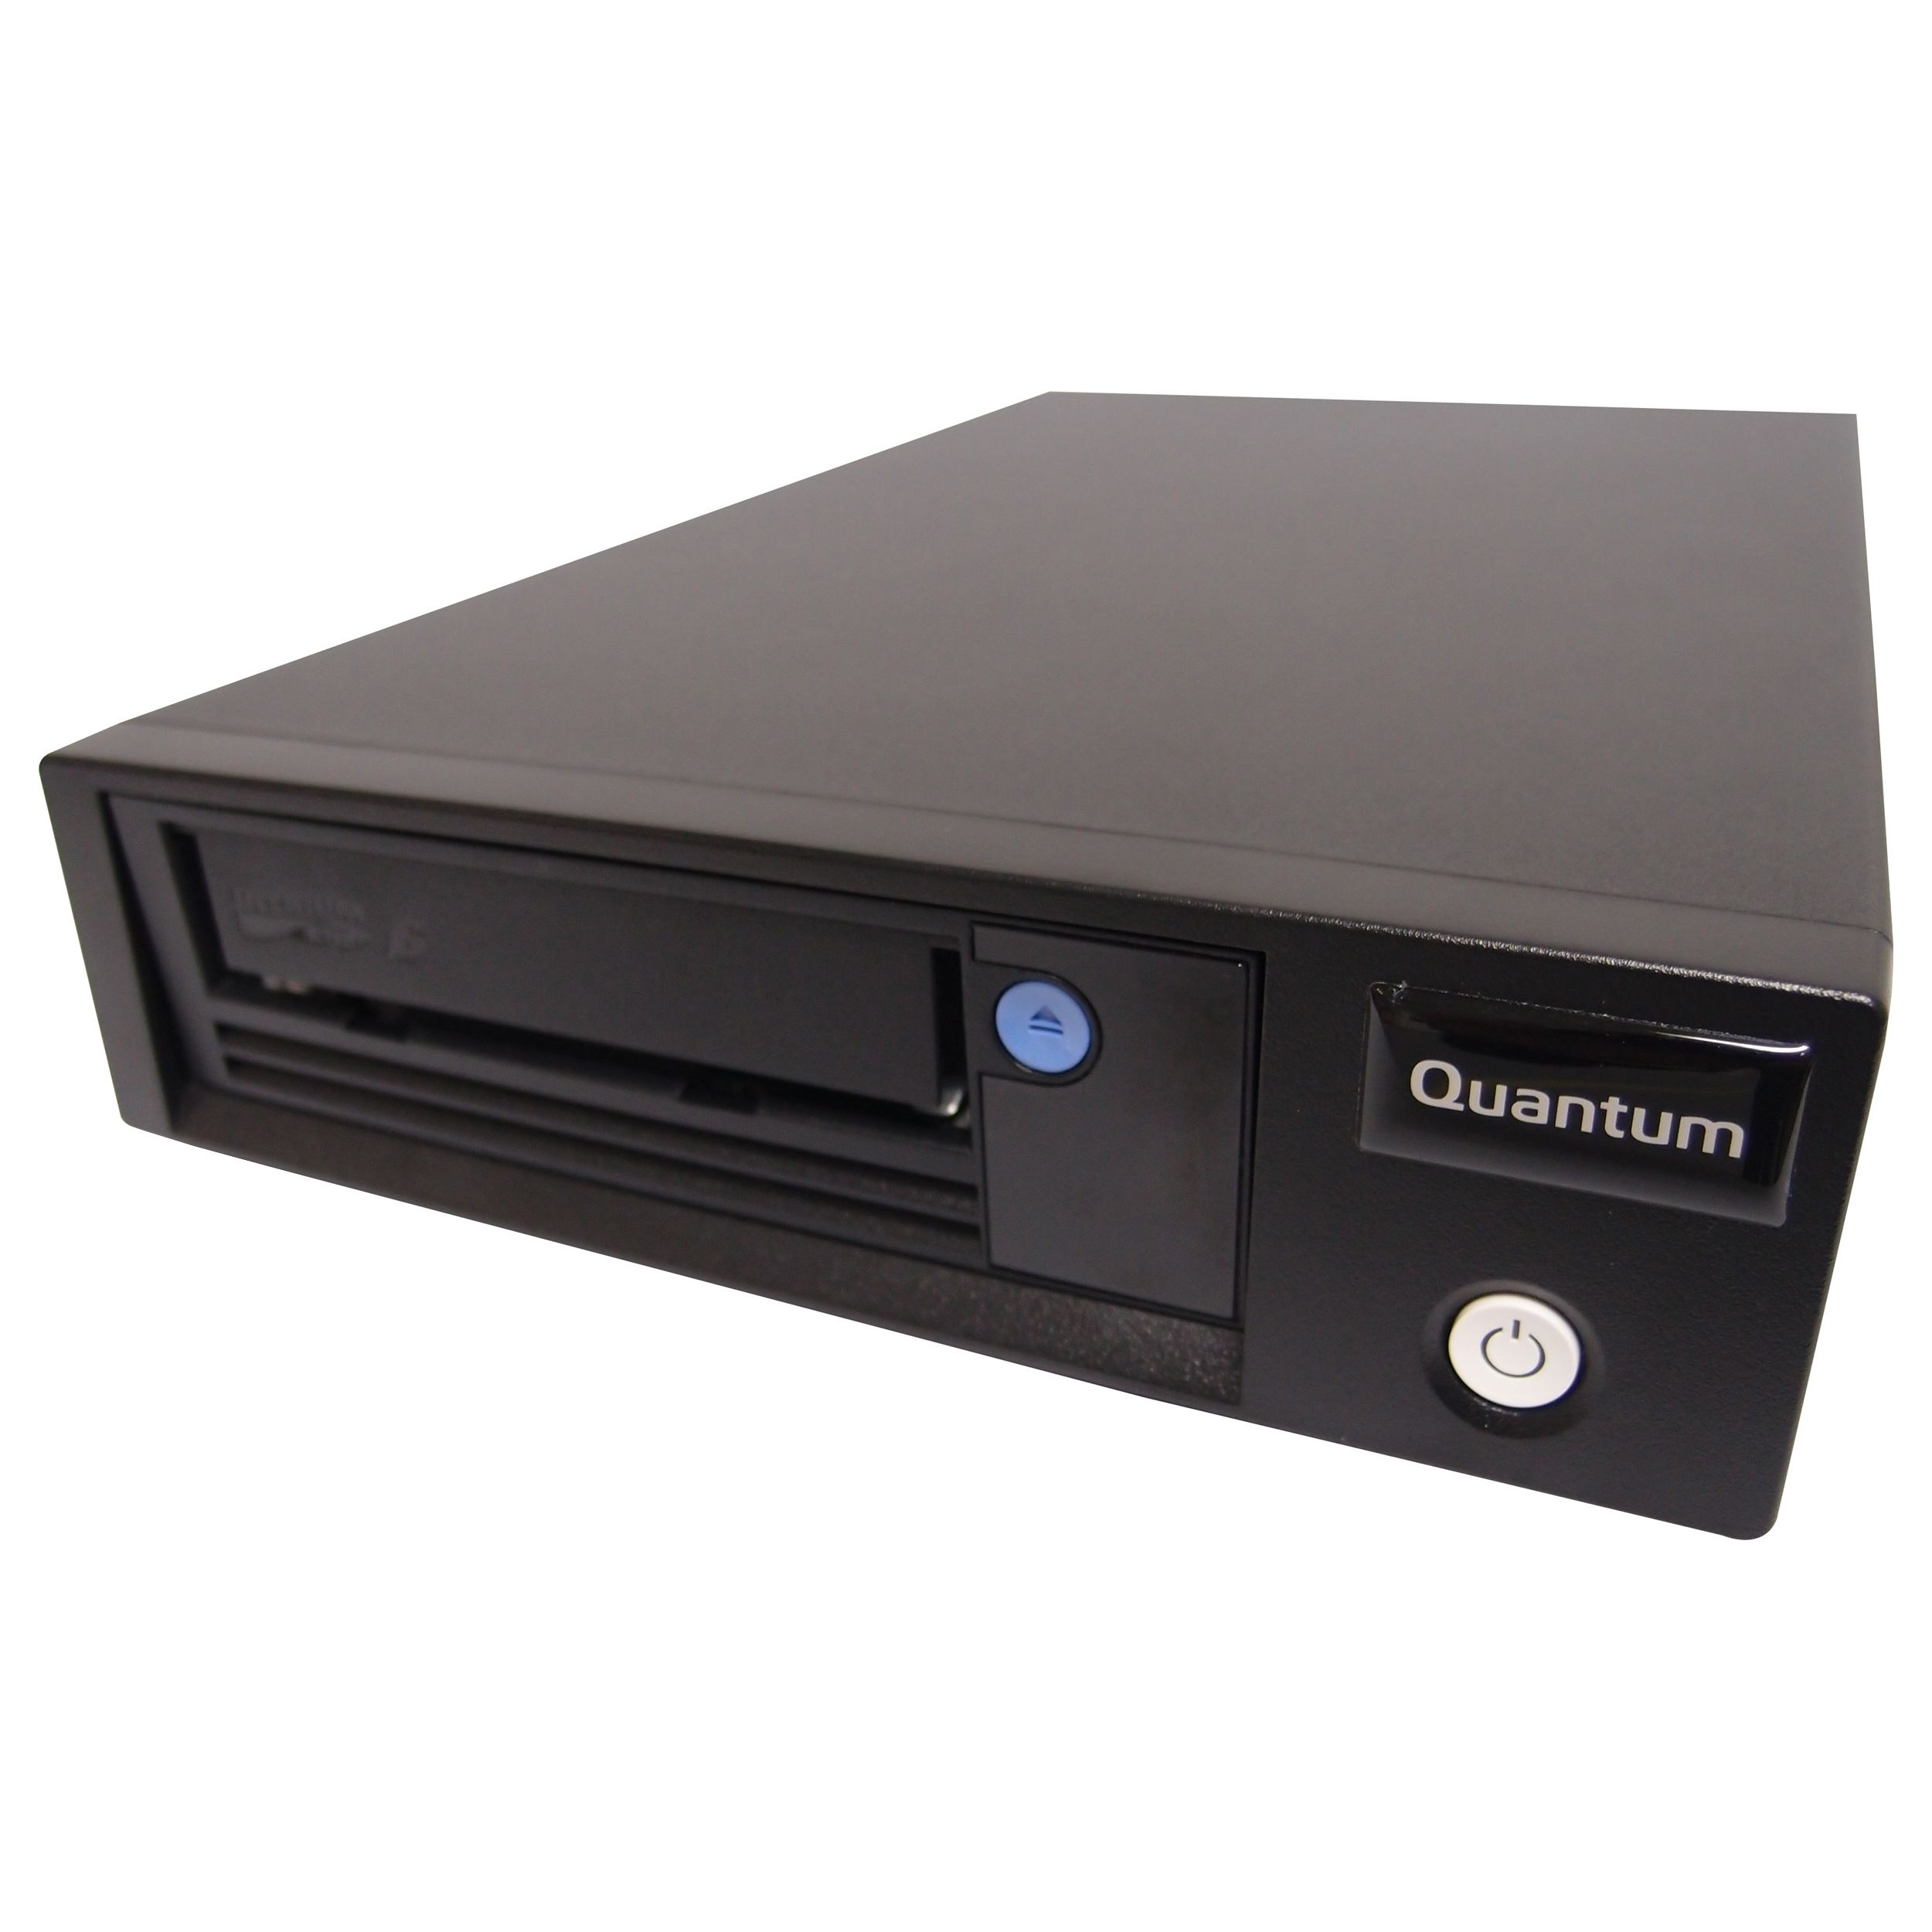 Quantum LSC33-ATDX-L8JA lagringsenhet för säkerhetskopiering Datalaggringsenhet Bandkassett LTO 12 TB